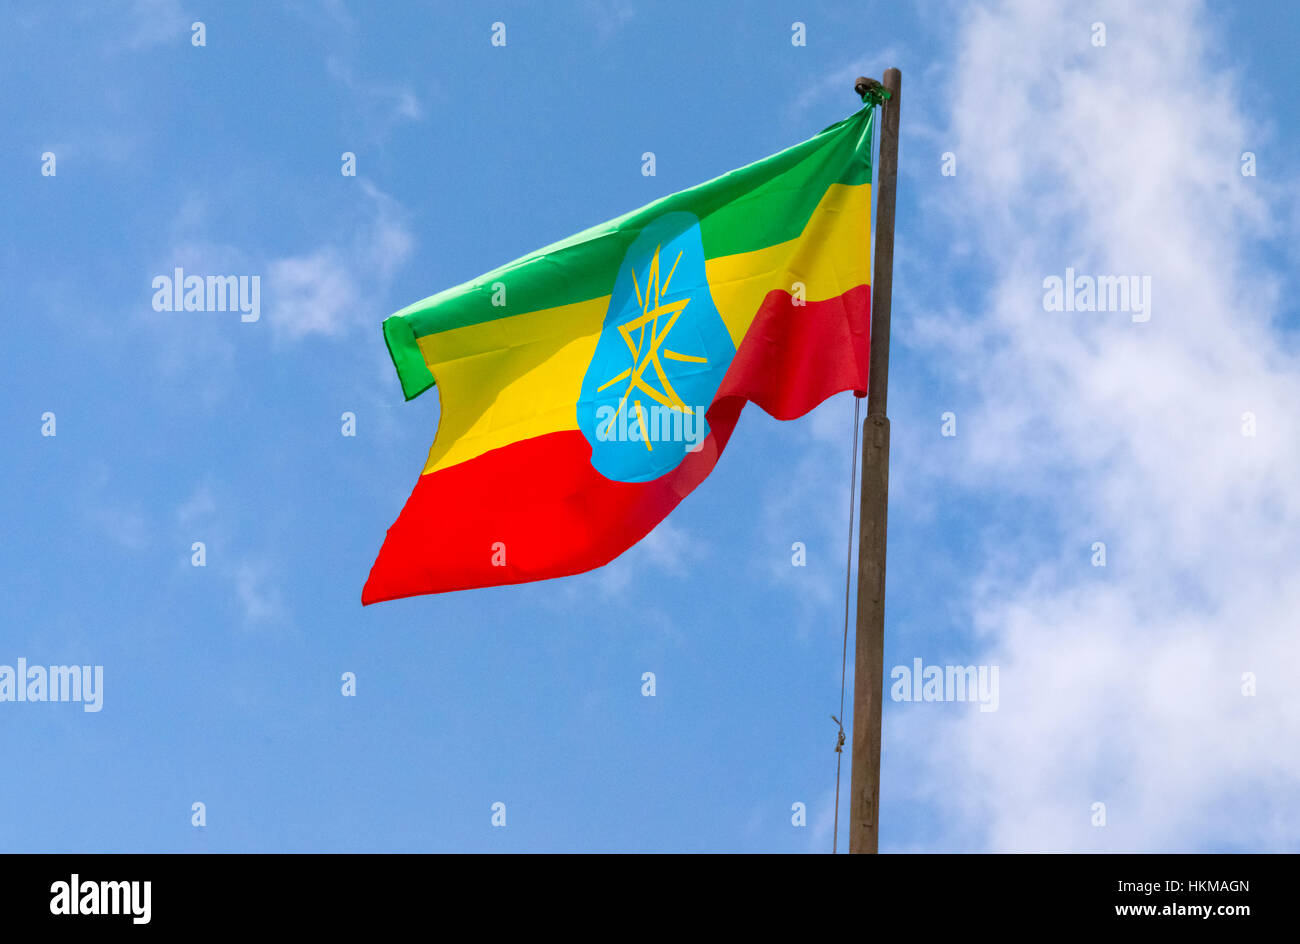 Ethiopia national flag Stock Photo